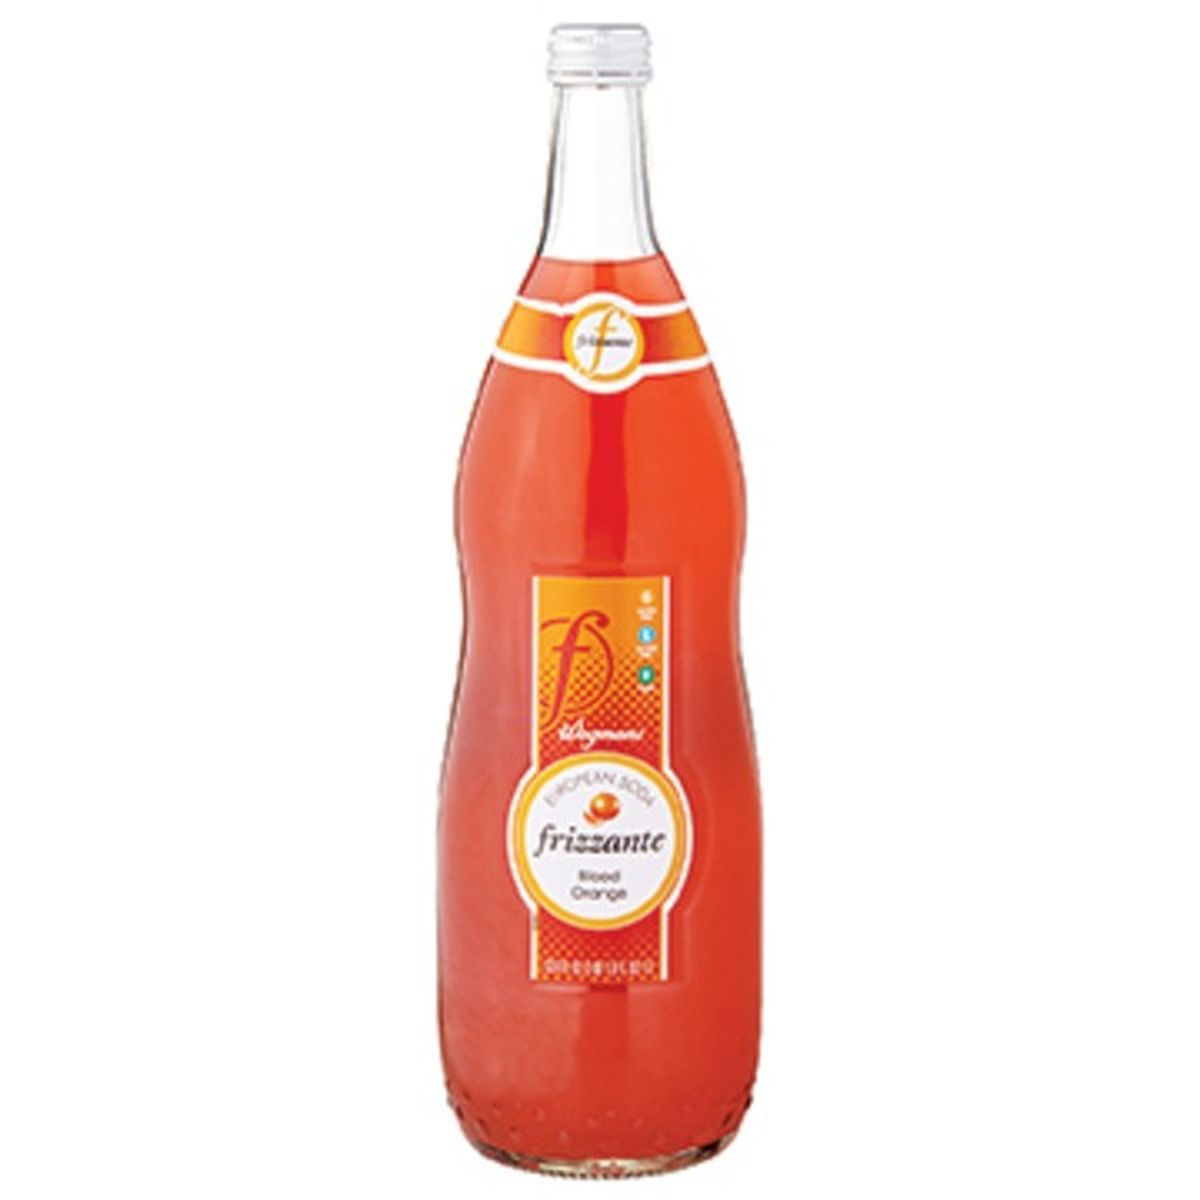 Calories in Wegmans Frizzante Blood Orange European Soda